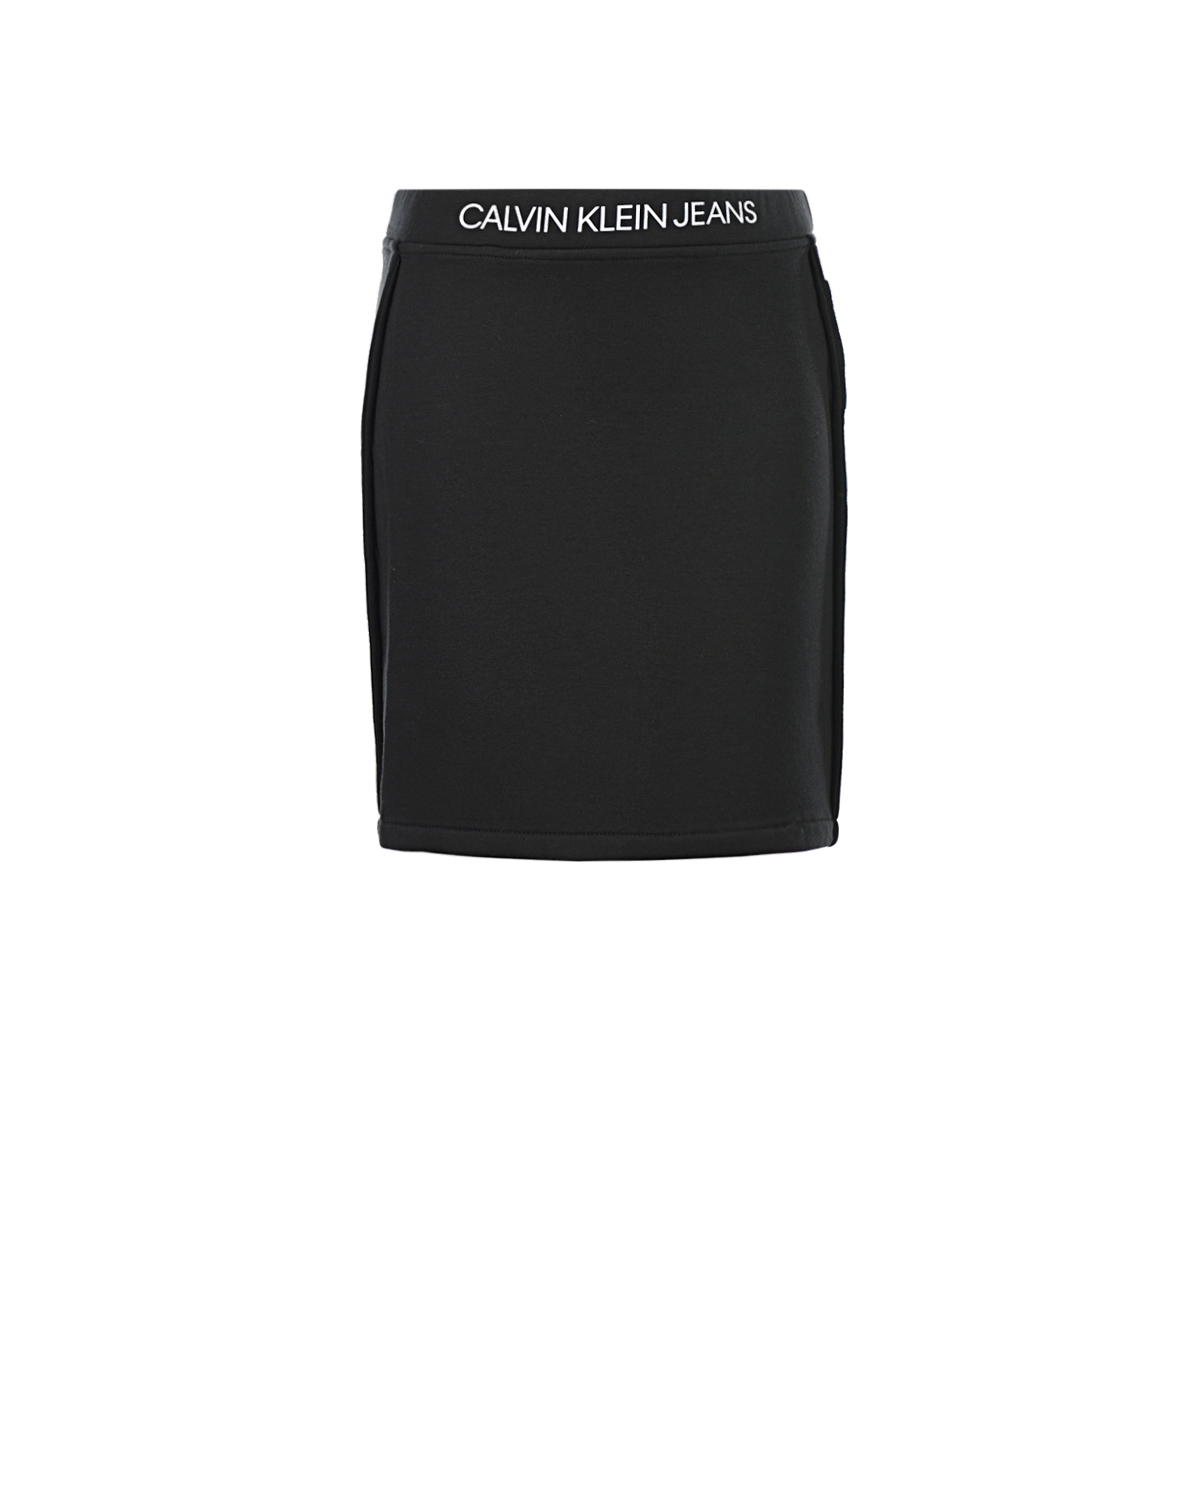 Двусторонняя юбка с поясом на резинке Calvin Klein детская, размер 152, цвет черный - фото 1